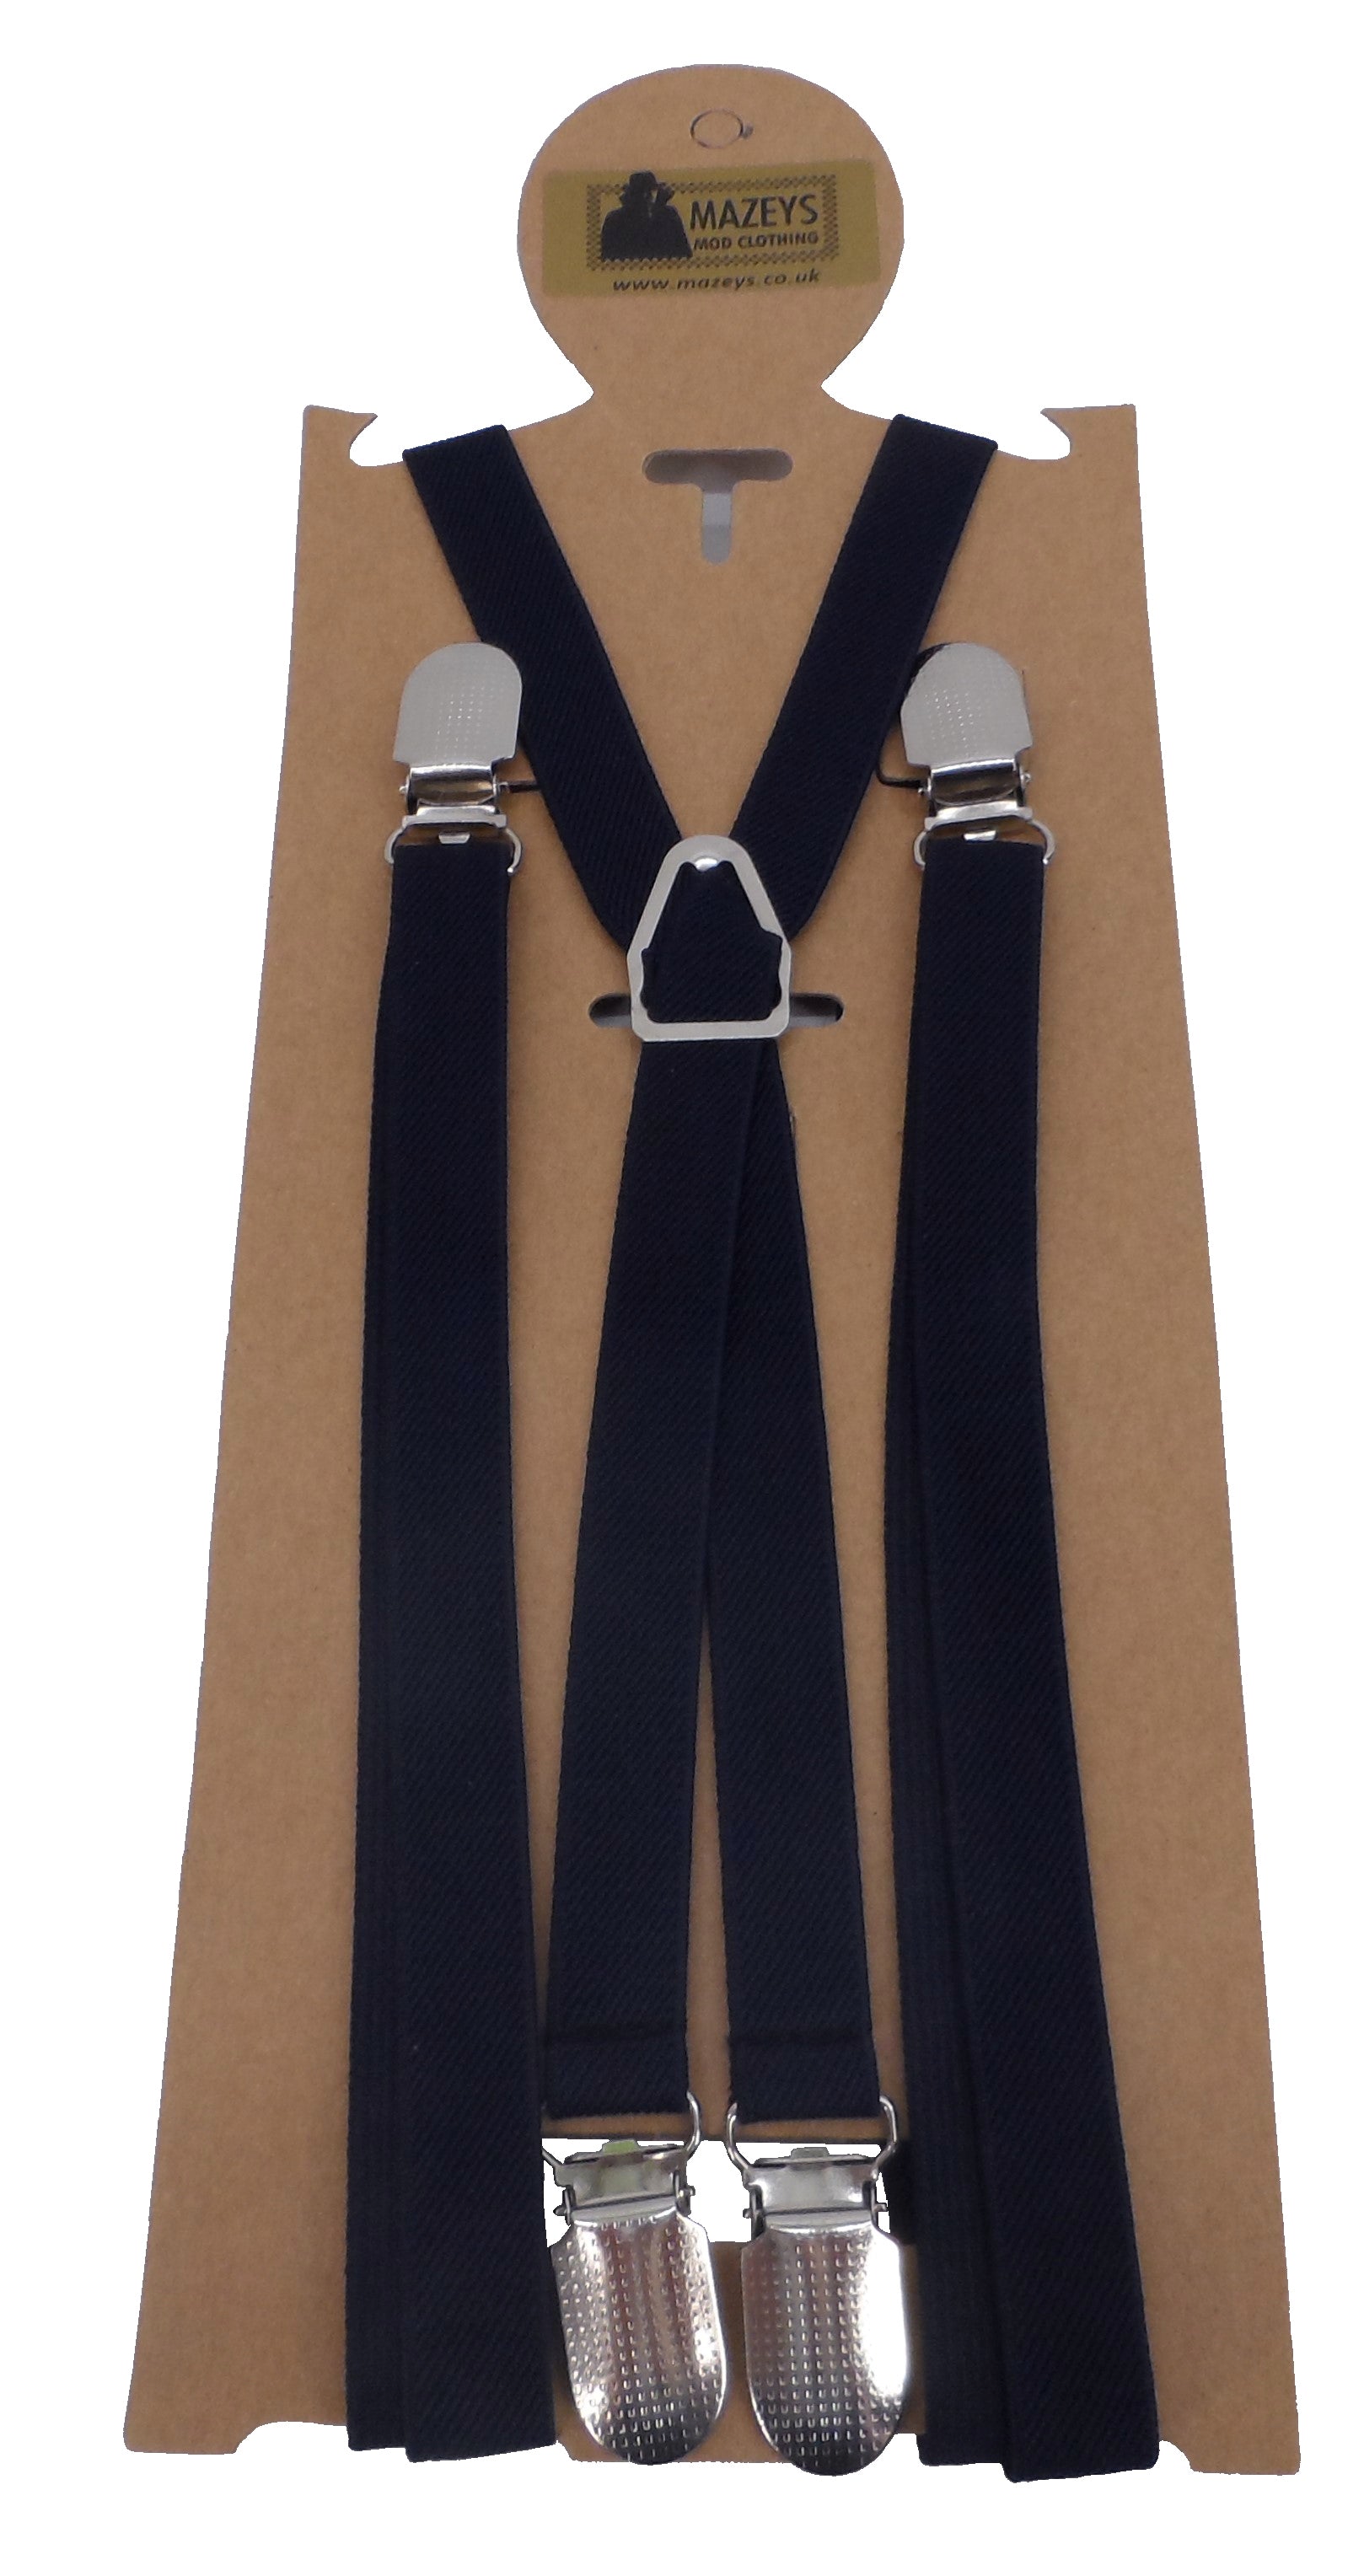 Buy Beige Suspenders for Men Button Suspenders Wedding Online in India   Etsy